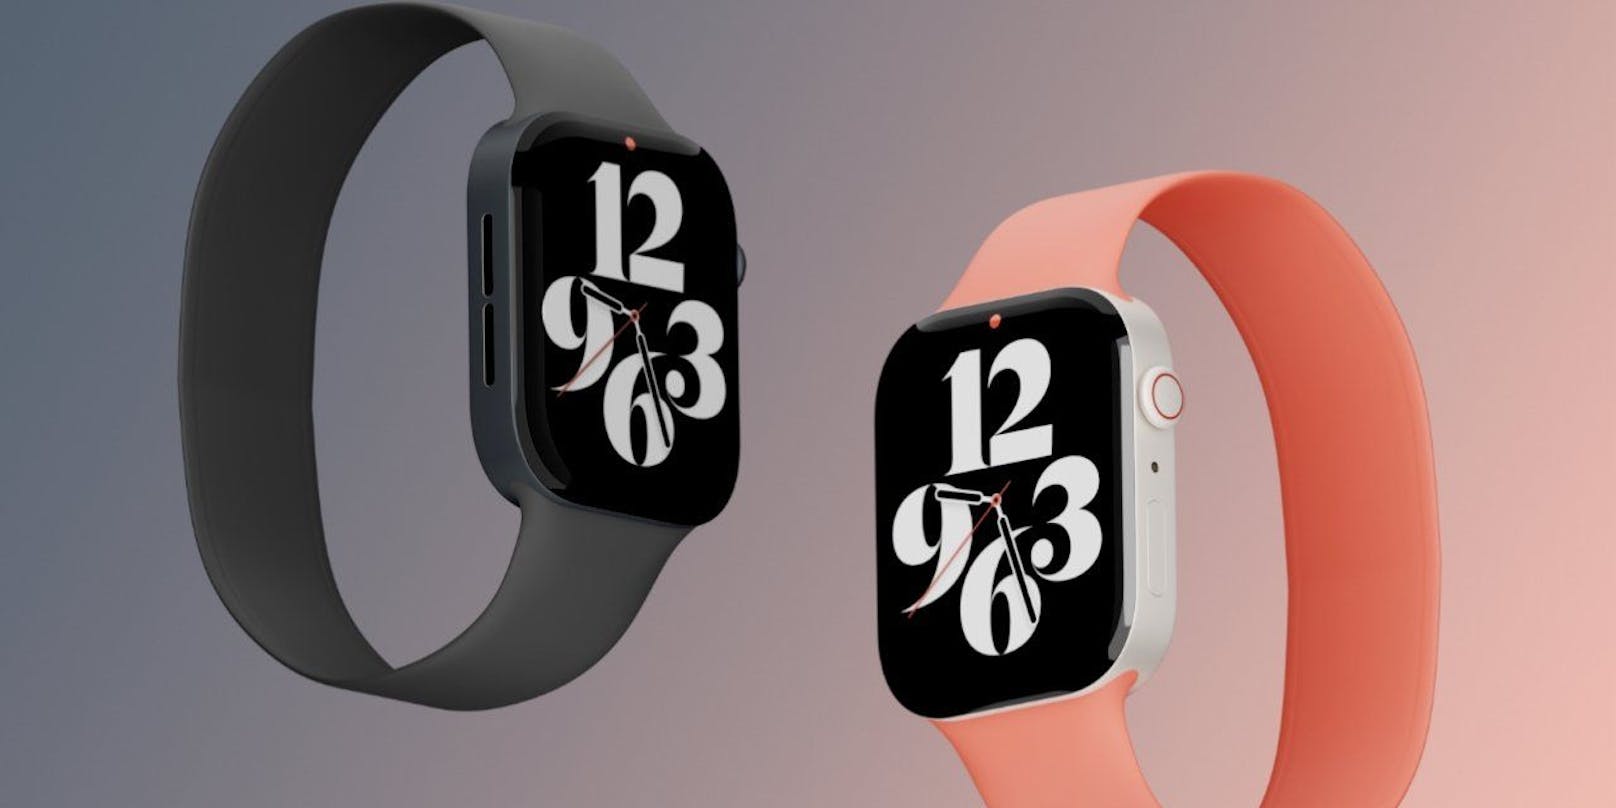 Visualisierung: So könnte die neue Apple Watch ausschauen.